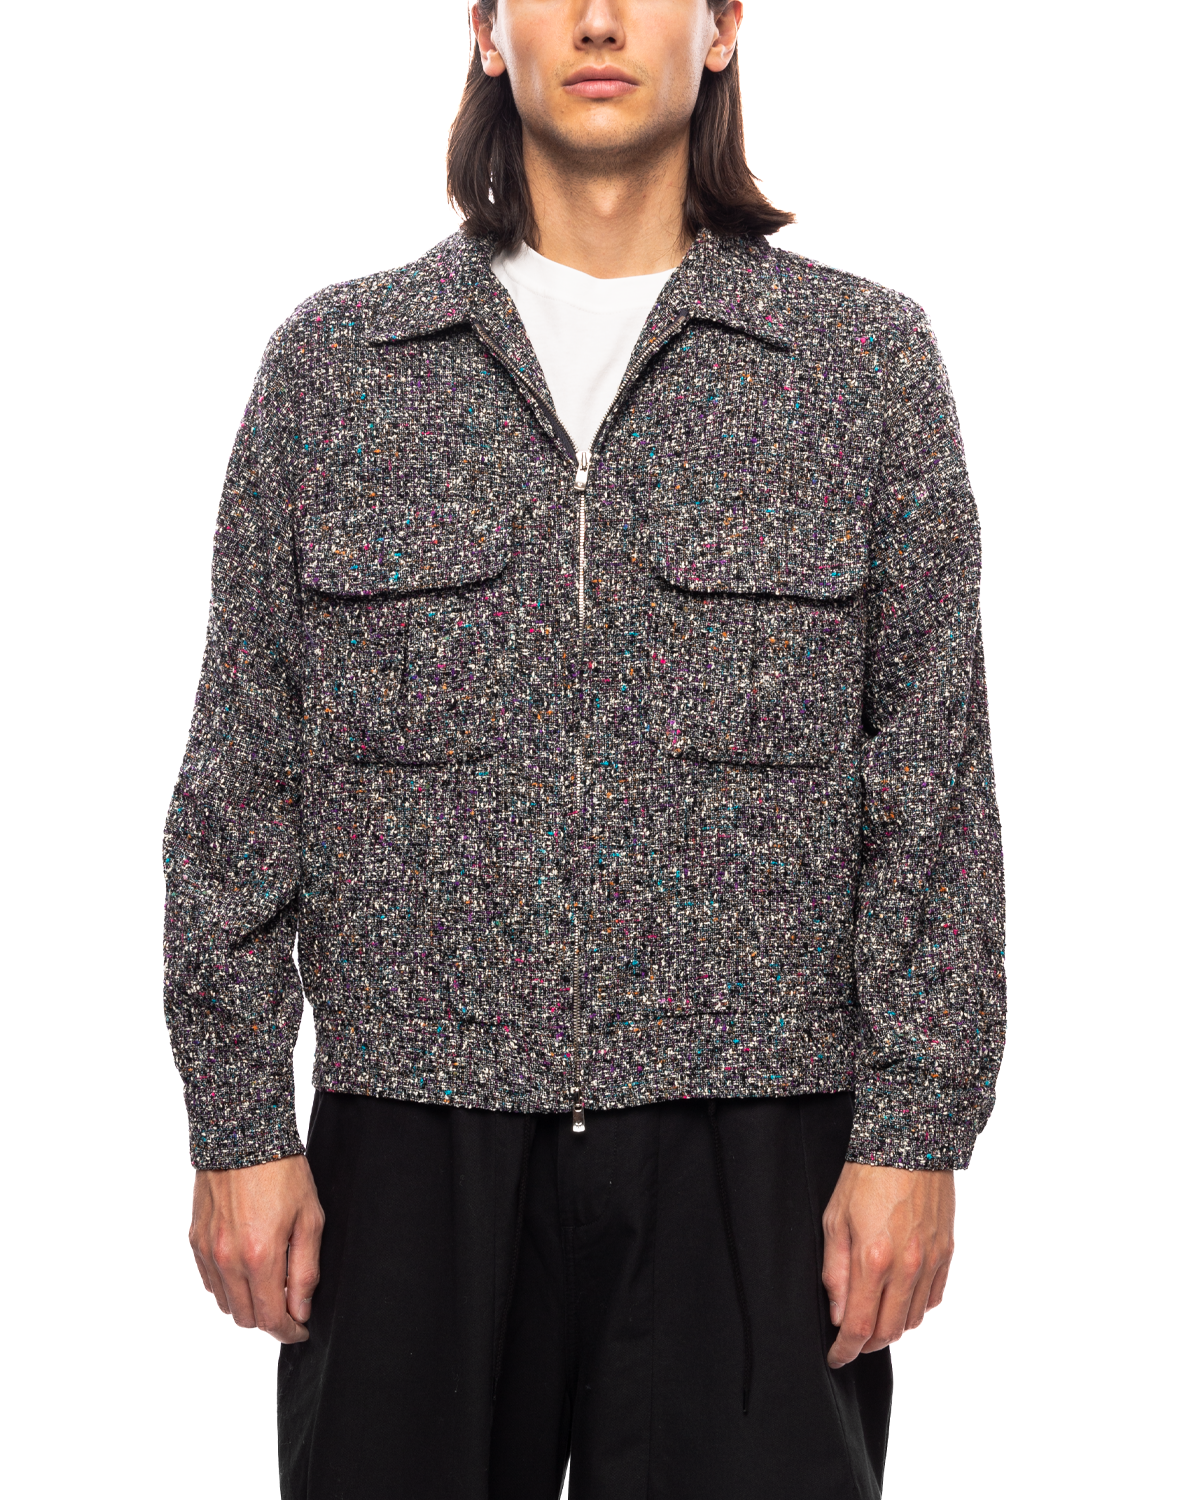 Sport Jacket - W/R/N/AC/PE Fancy Cloth Charcoal